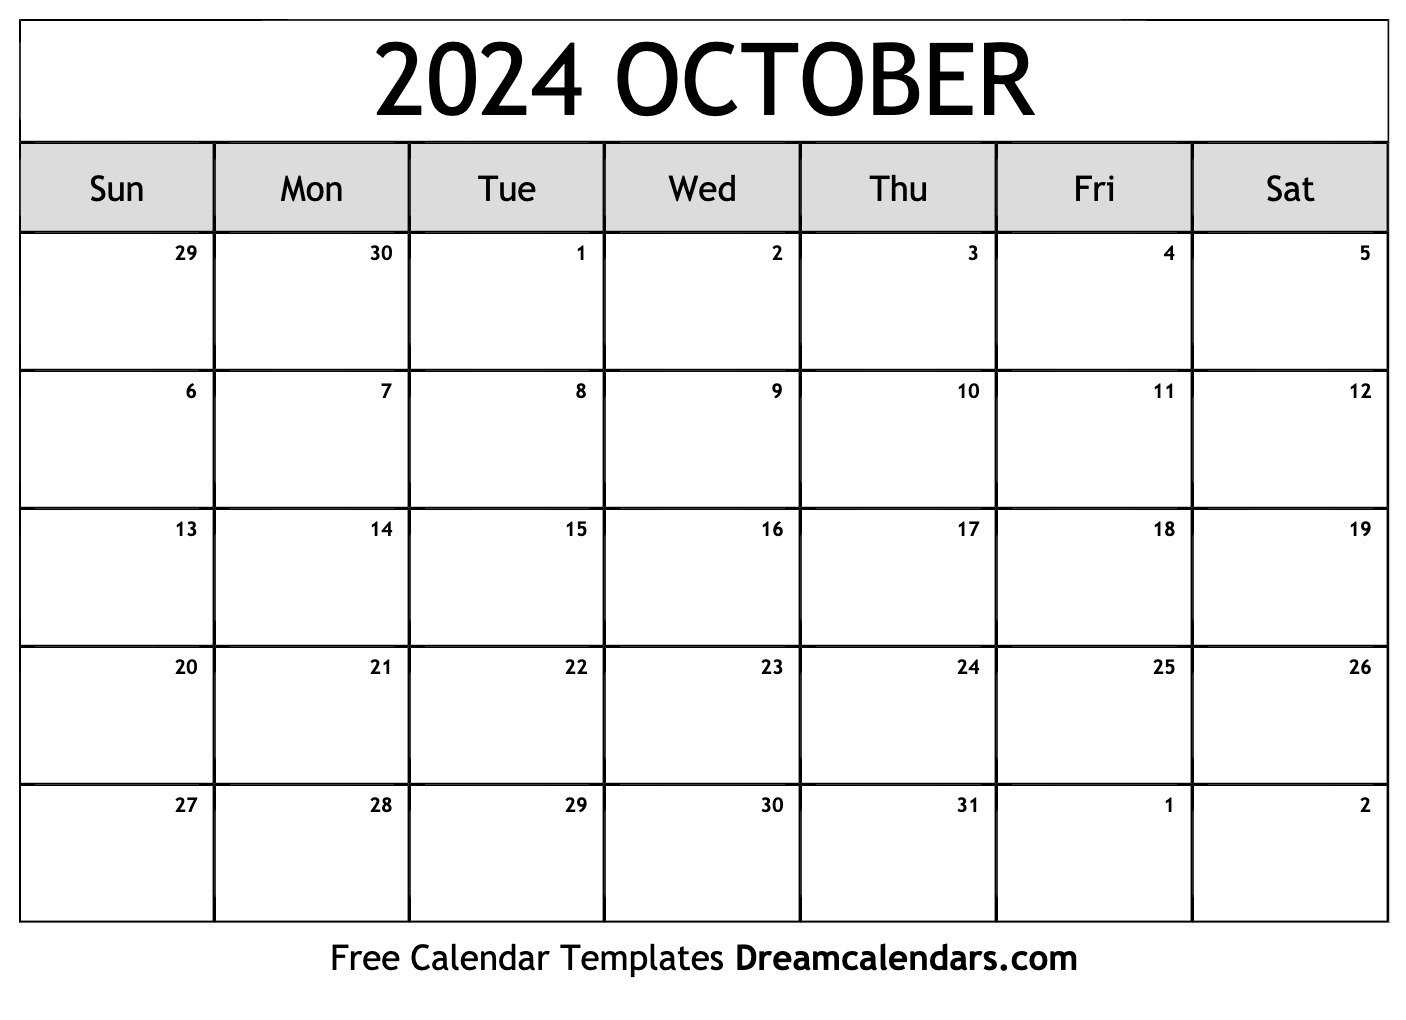 Calendar 2024 October Printable Barbe Carlita - Free Printable 2024 Monthly Calendar October